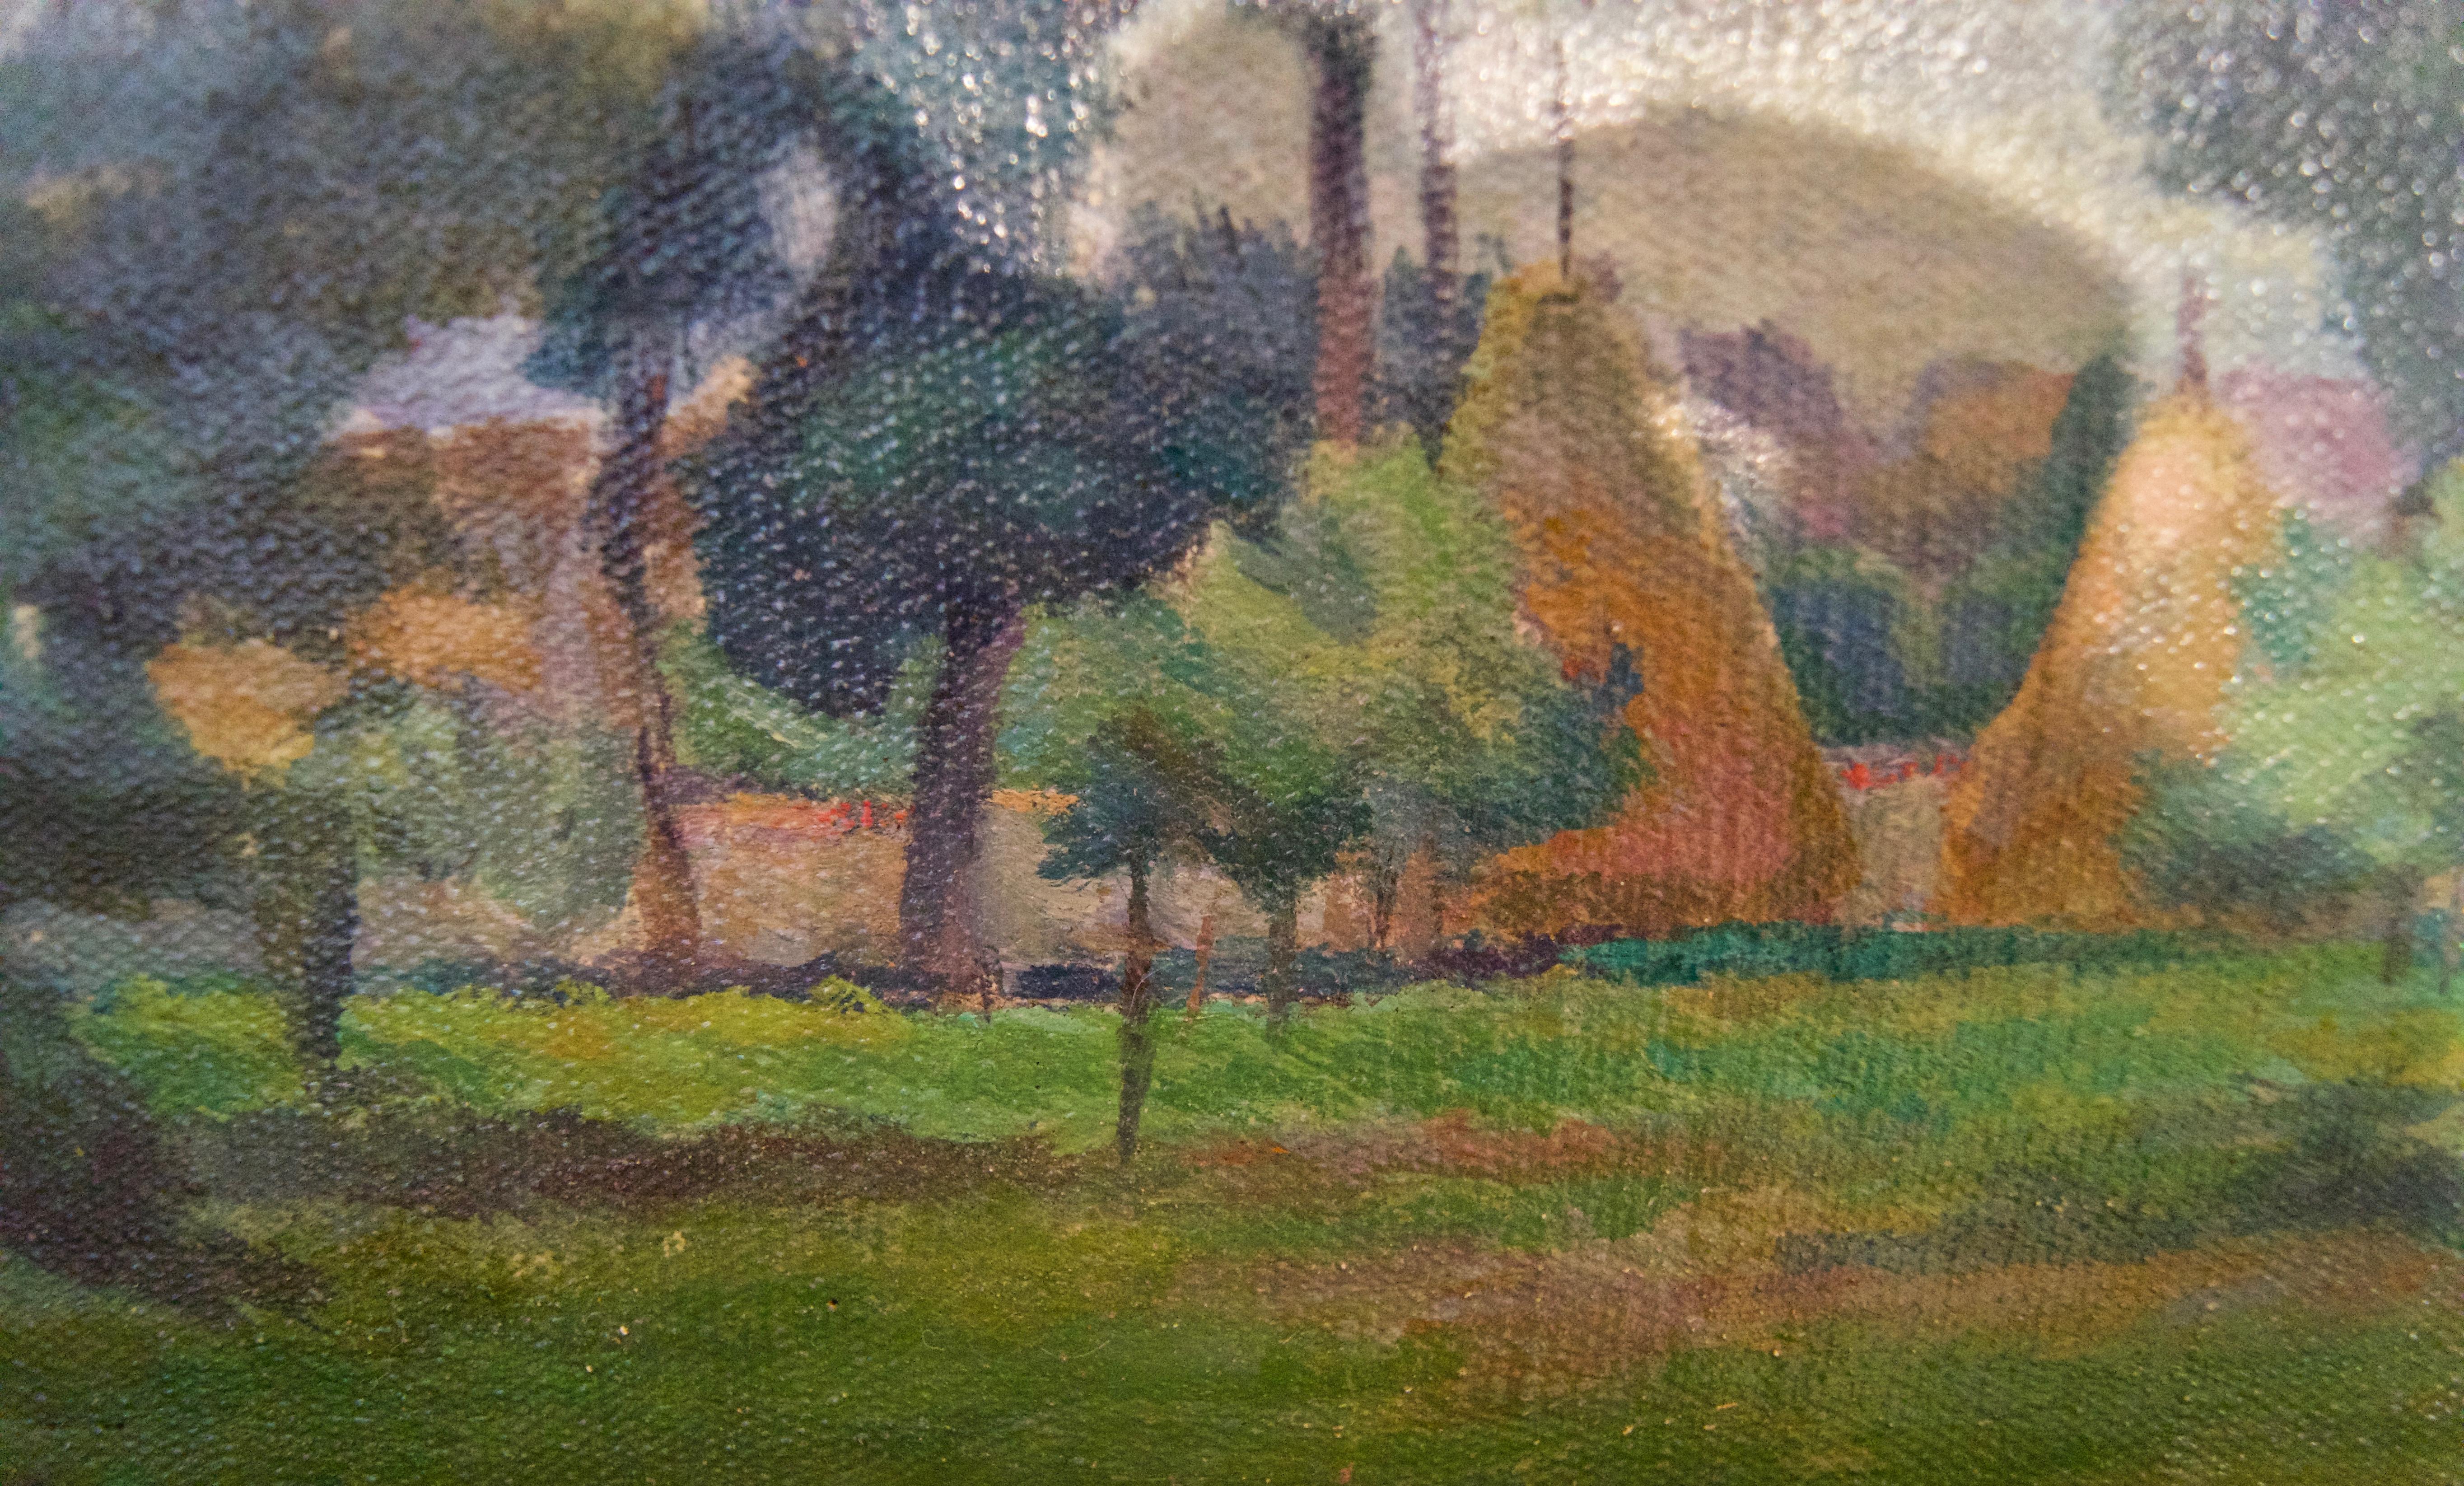 Łańcuchów Village - Mid 20th Century Oil Landscape by Helena Krajewska - Poland - Impressionist Painting by Helena Malarewicz-Krajewska